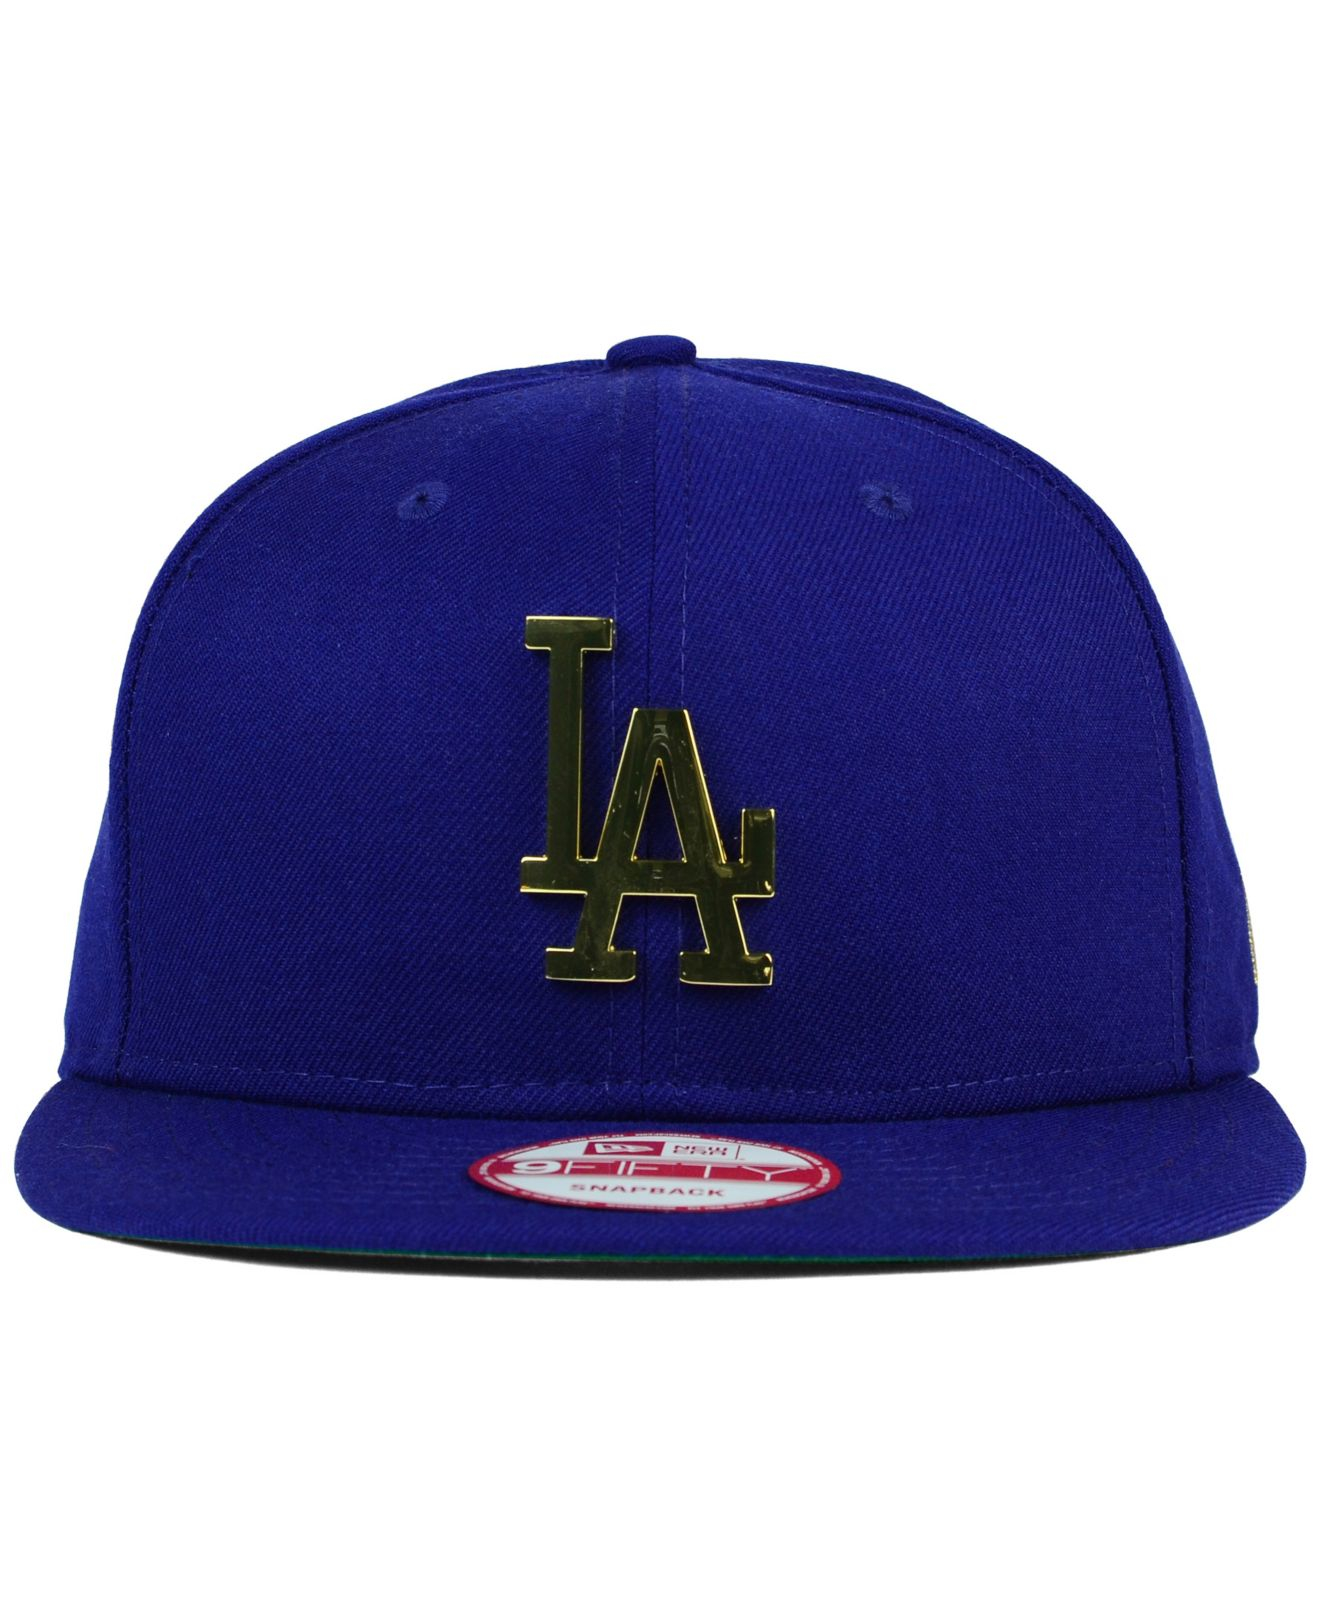 BNWT LA DODGERS New Era 9FIFTY Original Fit GOLD METAL Logo Snapback Hat Cap 